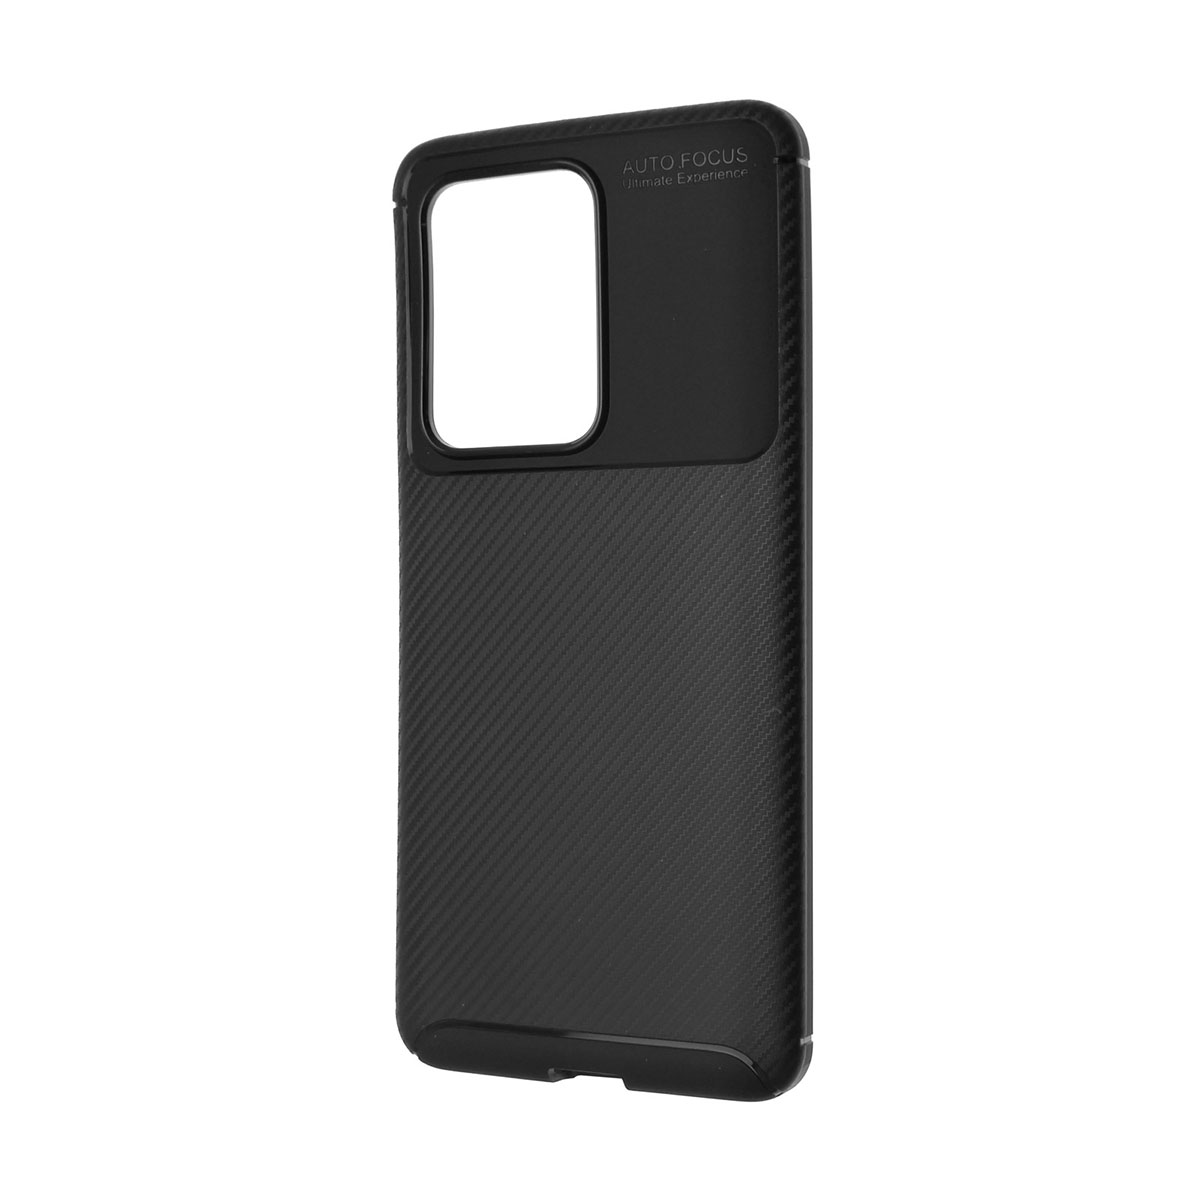 Чехол накладка AUTO FOCUS UE для SAMSUNG Galaxy S20 Ultra (SM-G988), силикон, матовый, цвет черный.